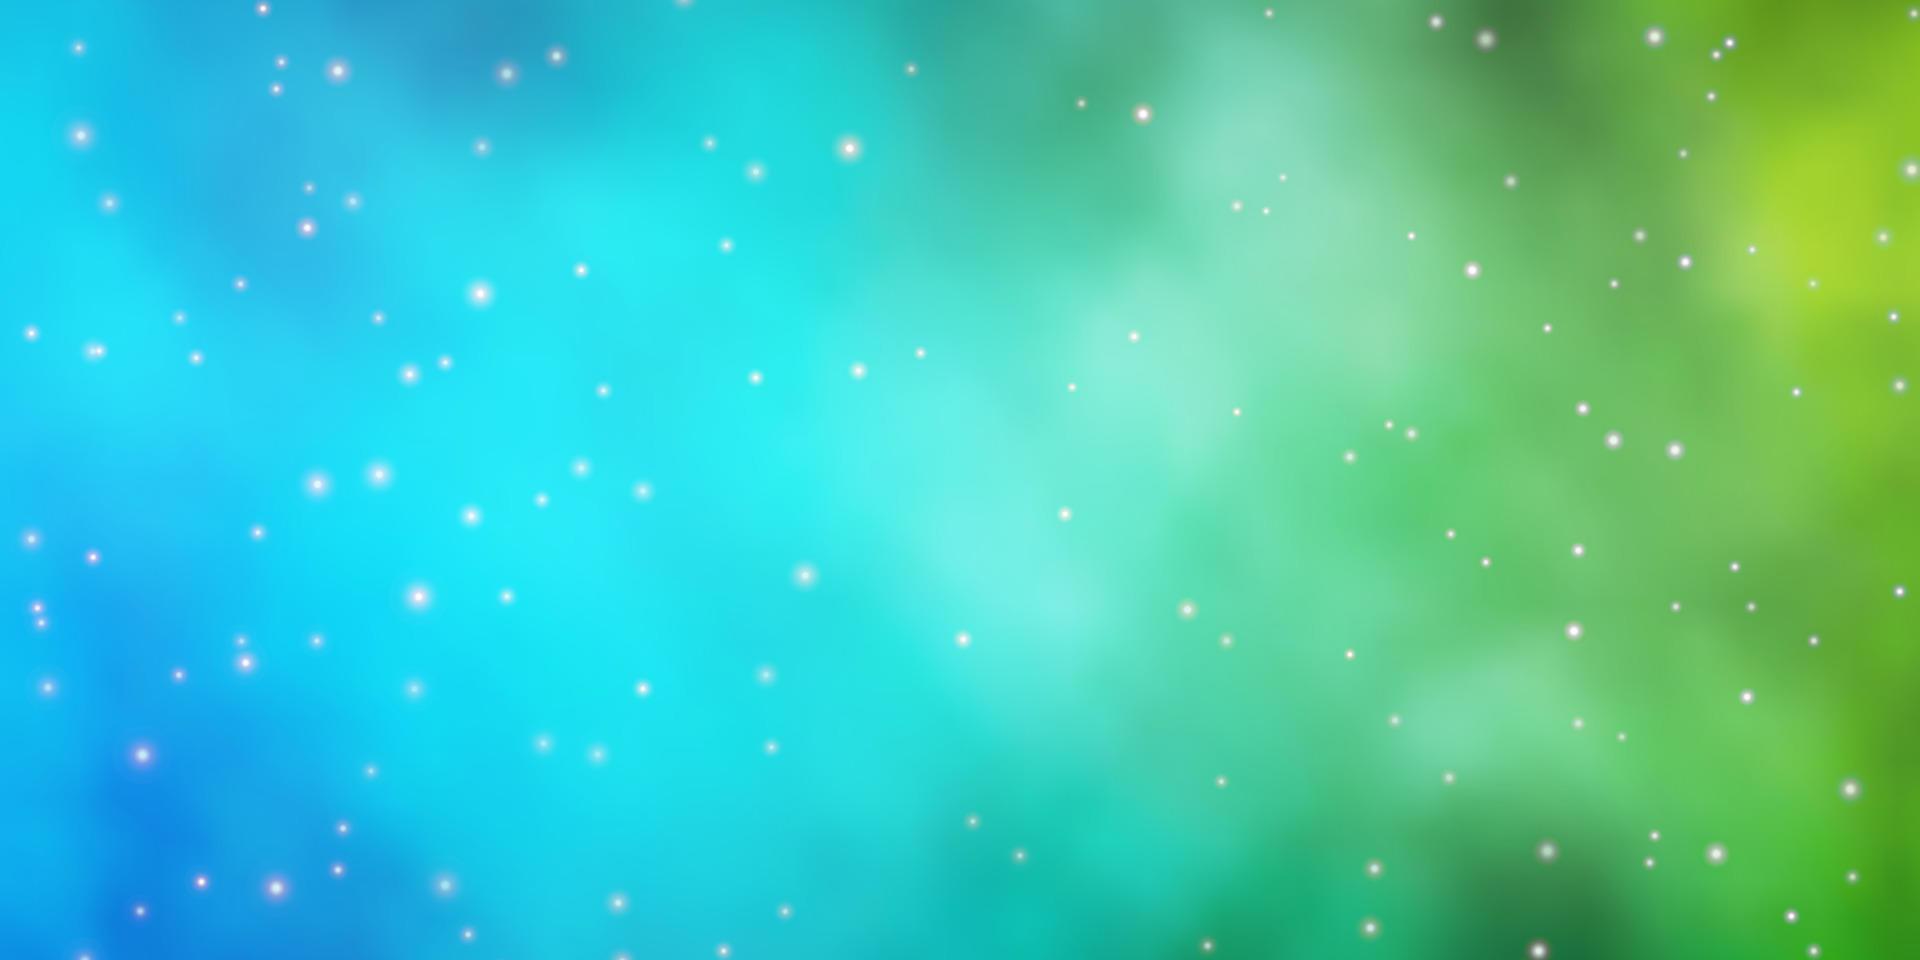 lichtblauwe, groene vectorlay-out met heldere sterren. vector